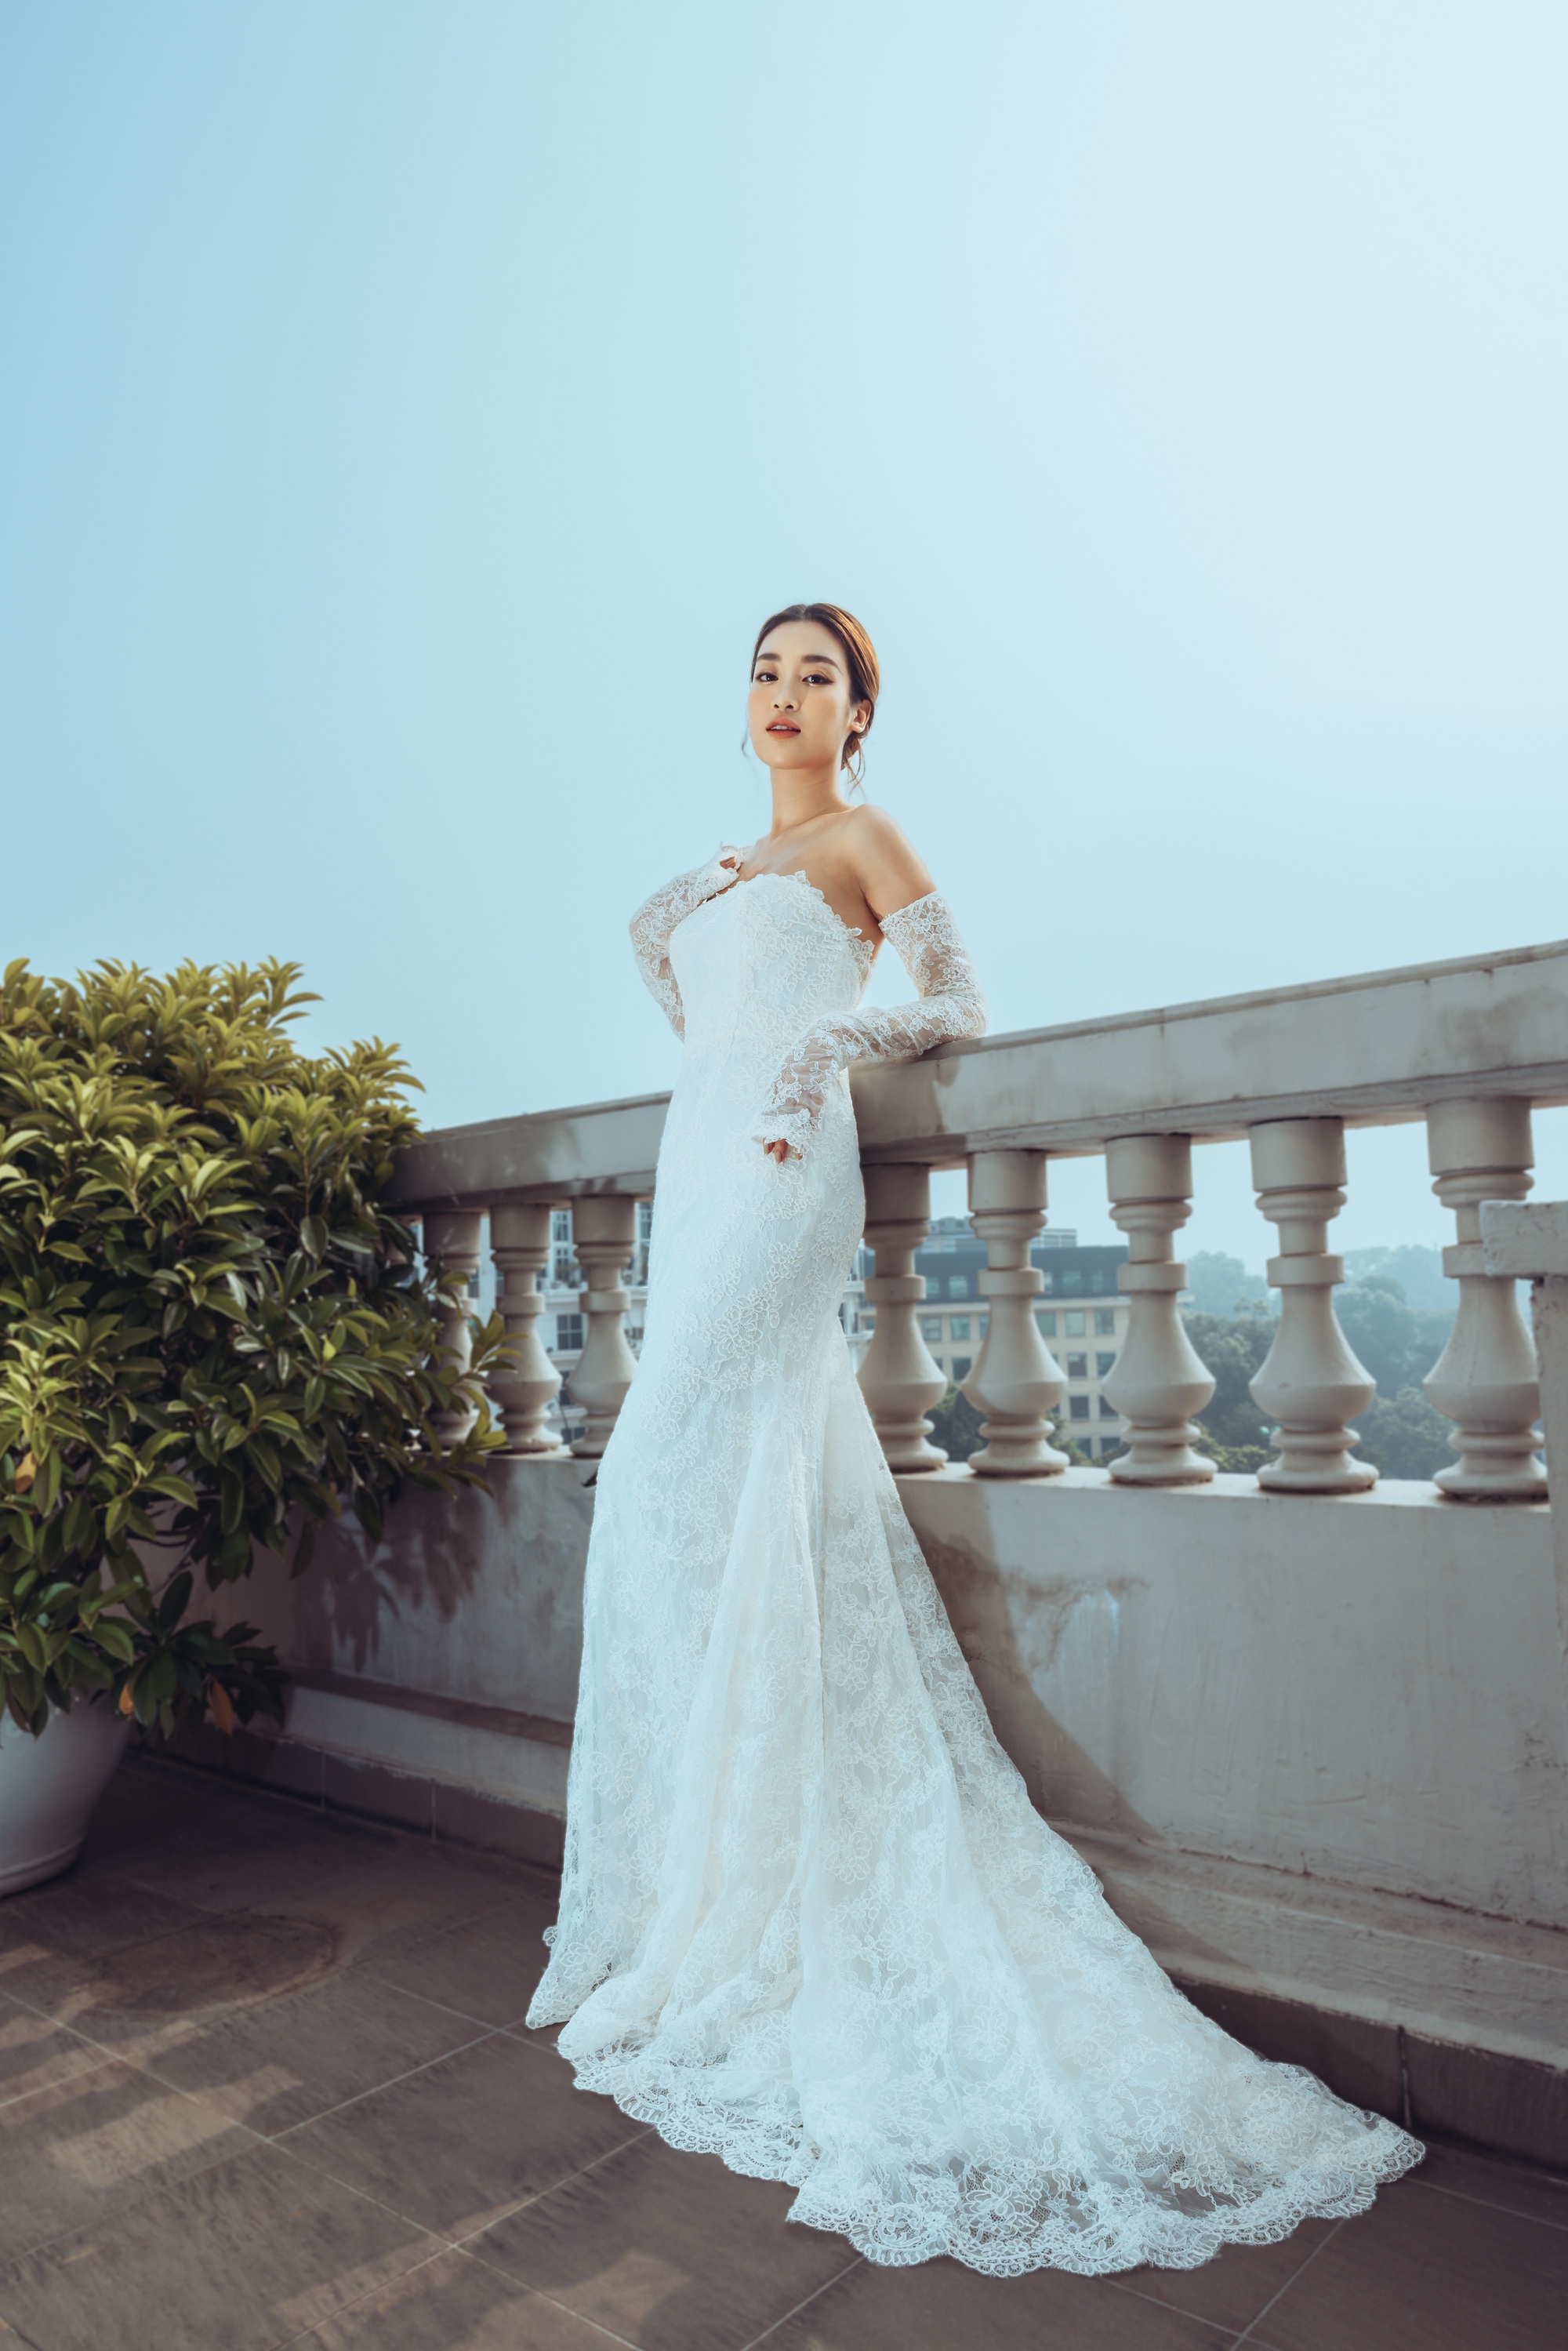 Hoa hậu Đỗ Mỹ Linh mặc váy cưới xinh đẹp khiến phụ nữ cũng phải rung động trước ngày lấy chồng - Ảnh 10.